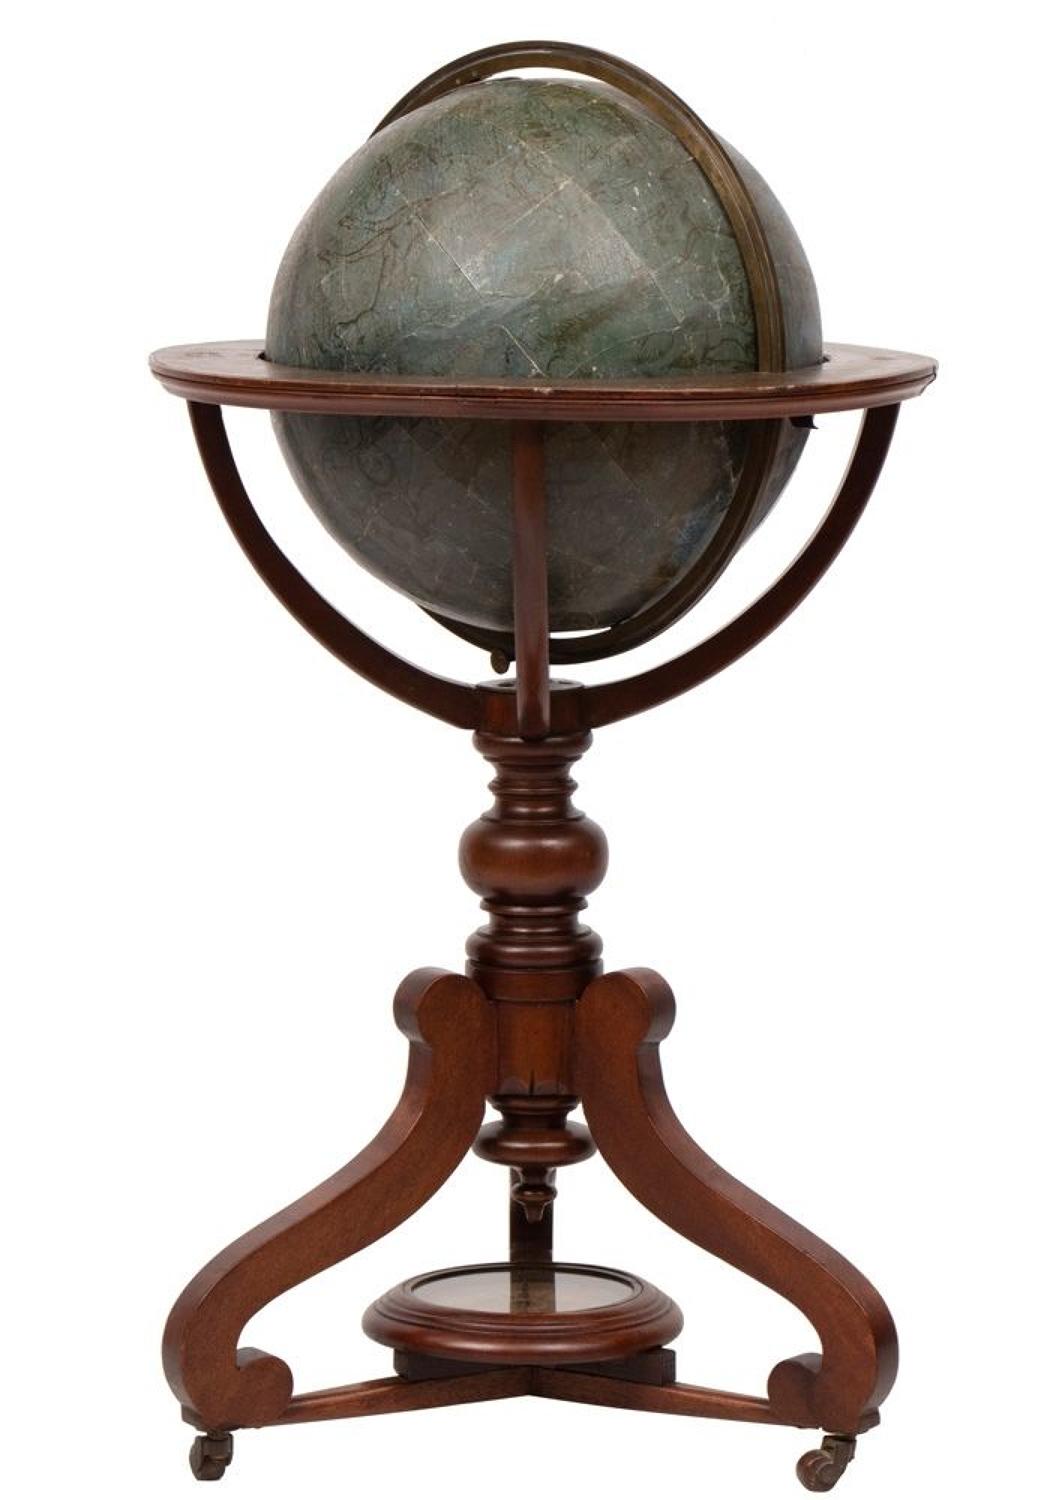 19th Century Celestial Globe by W & A K Johnston, Edinburgh